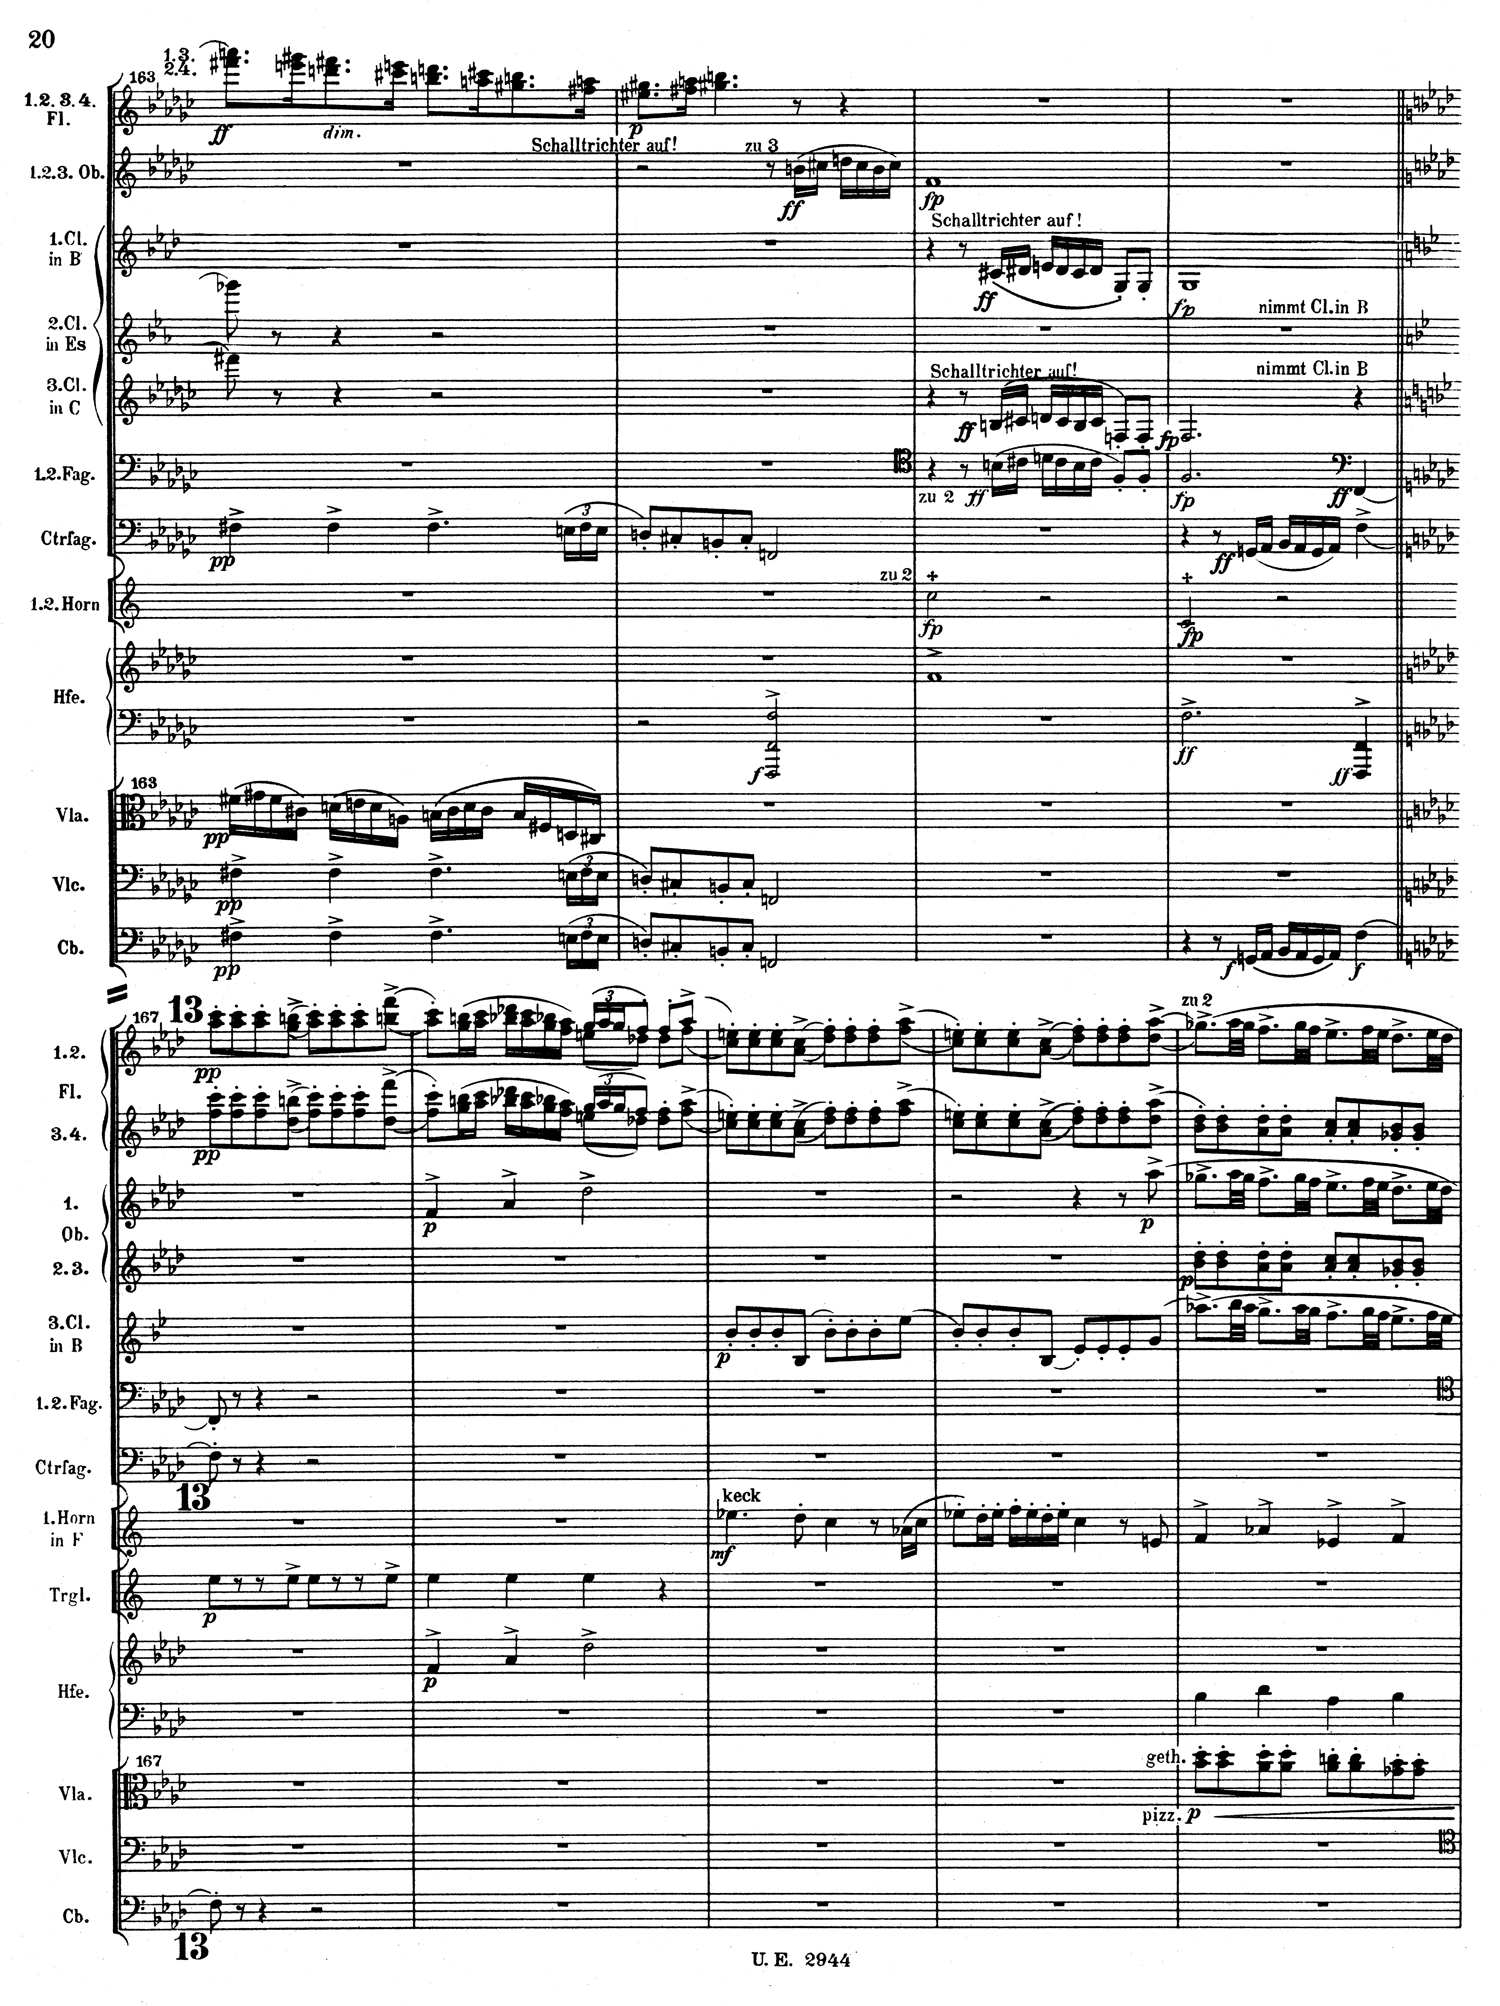 Mahler 4 Score 4.jpg